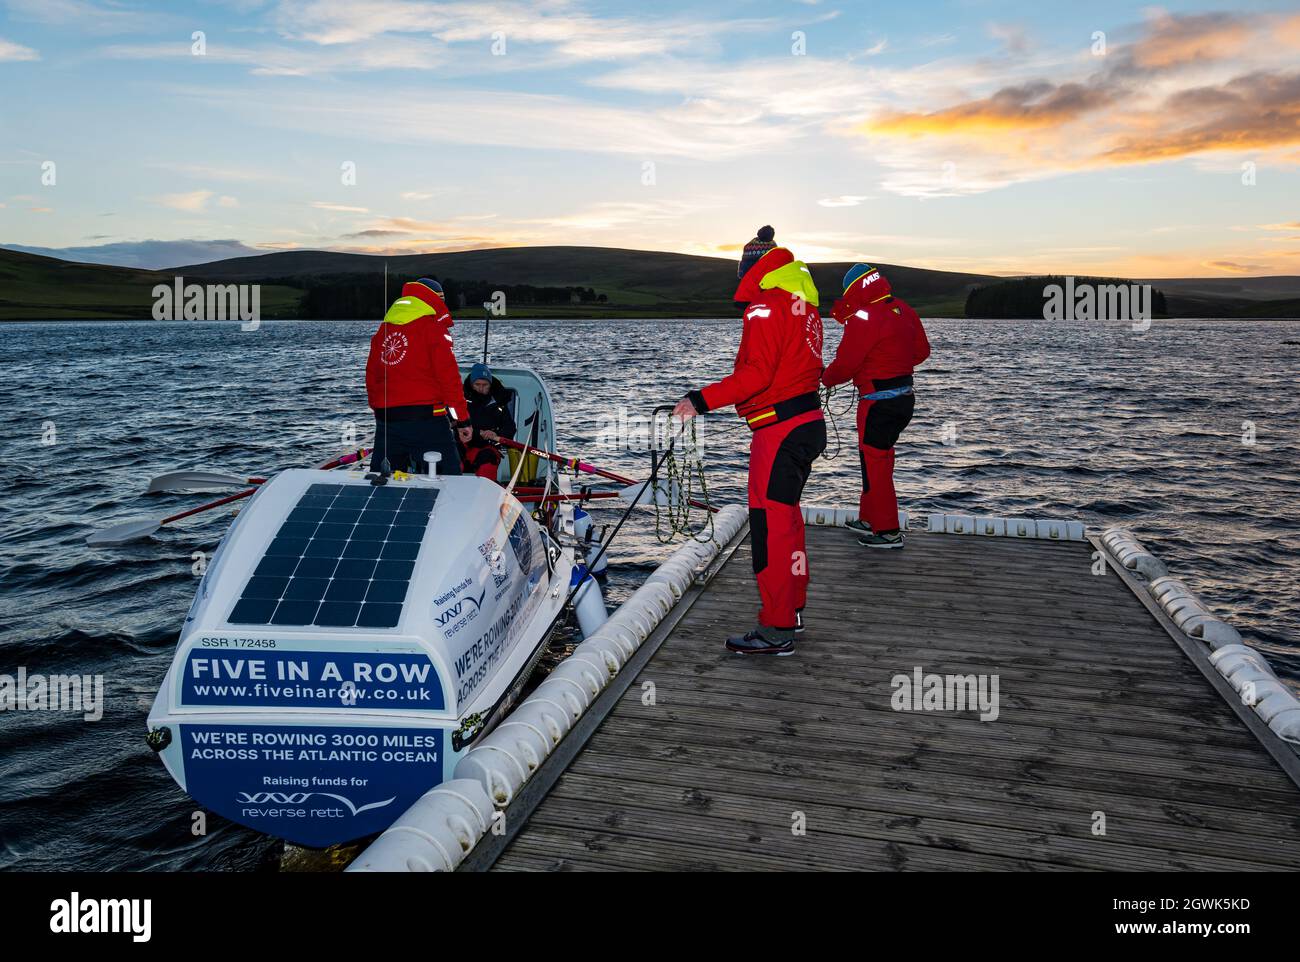 Gli uomini lanciano la barca a remi sull'oceano nella riserva Whiteadder per una sessione di allenamento per la sfida atlantica, East Lothian, Scozia, Regno Unito Foto Stock